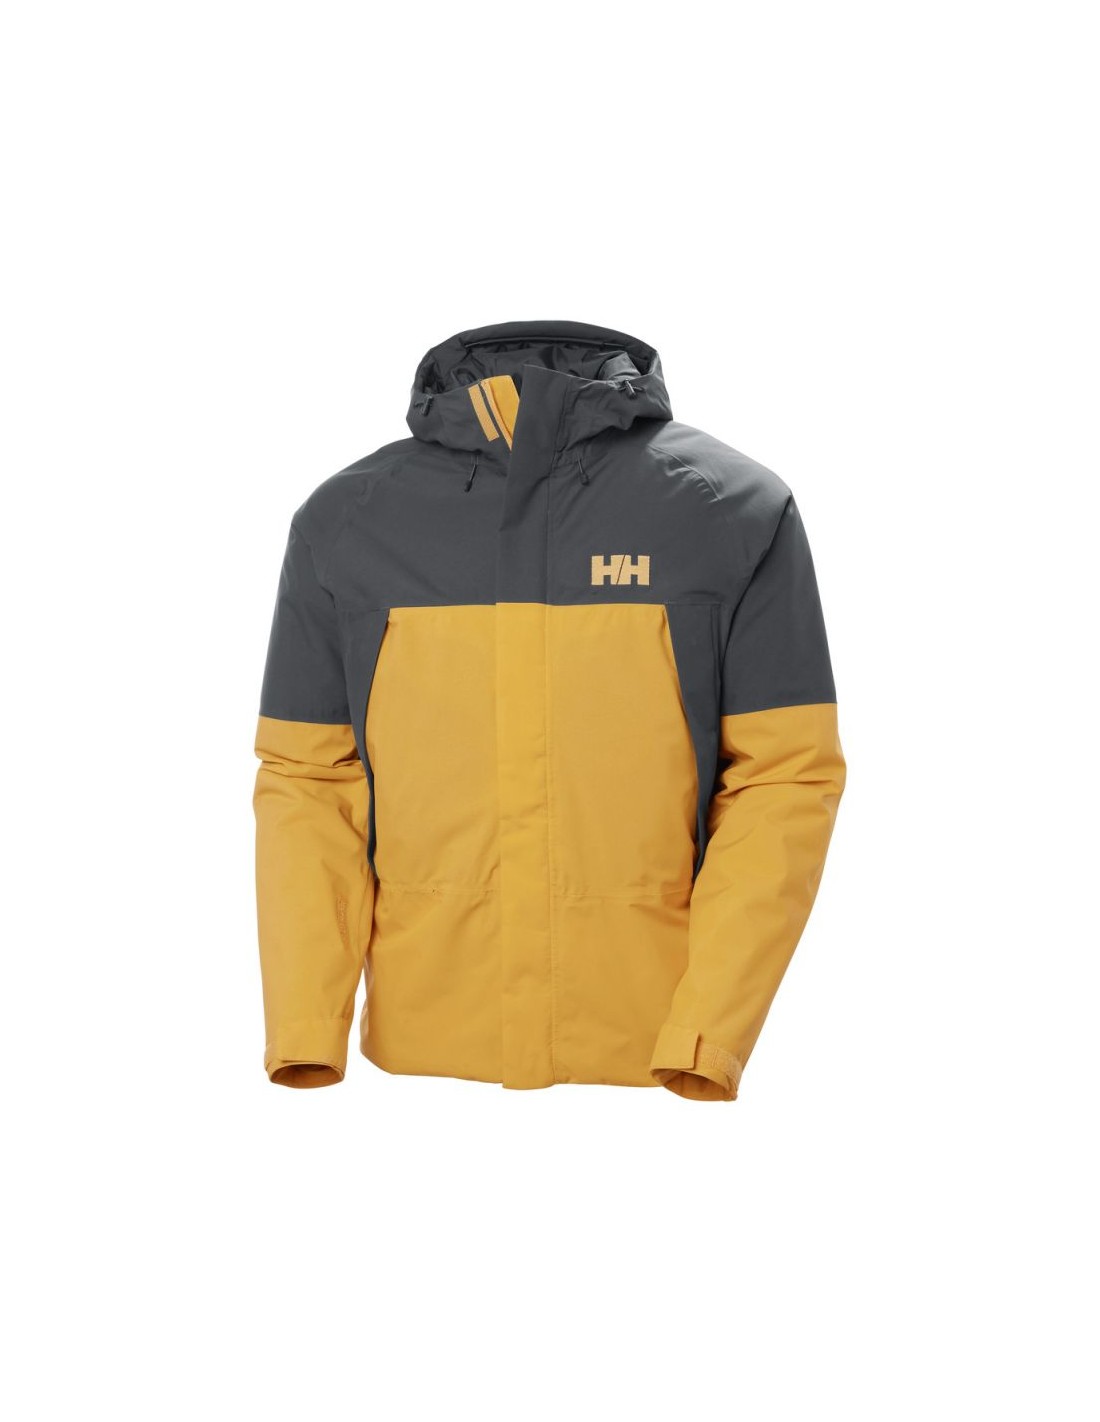 Helly Hansen Banff Insulated Jacket M 63117 328